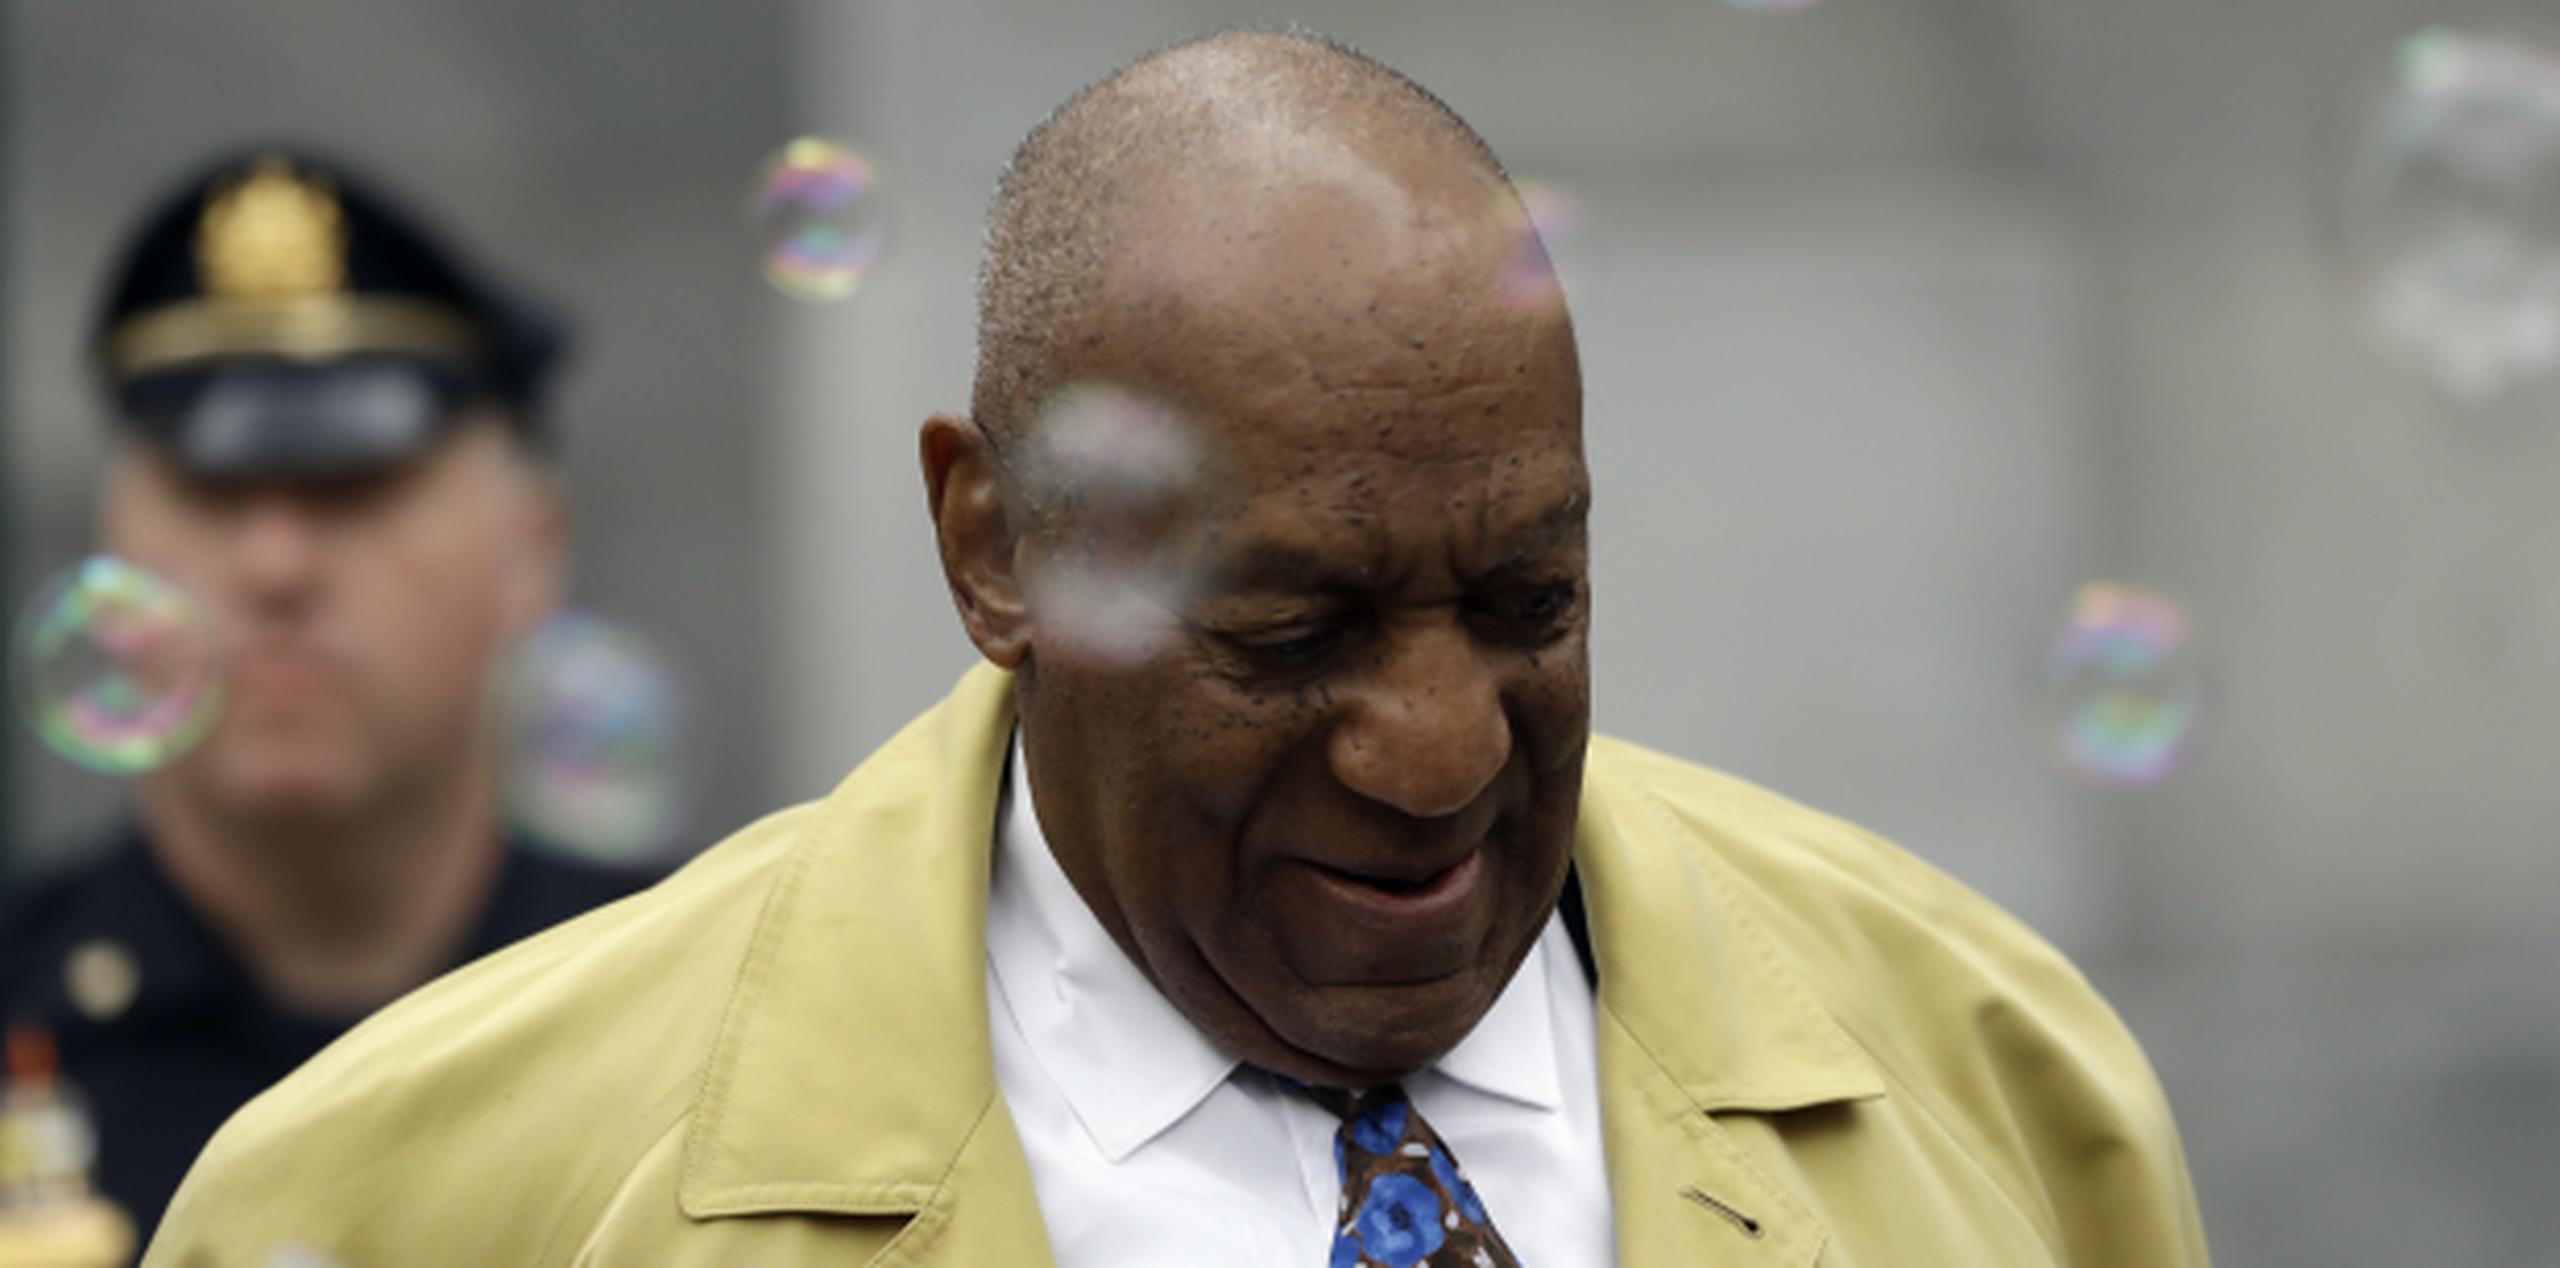 La defensa de Cosby, quien en el pasado representó a Michael Jackson, calificó como una “mentirosa patológica” que creó un engaño para recibir mucho dinero. (AP) 

